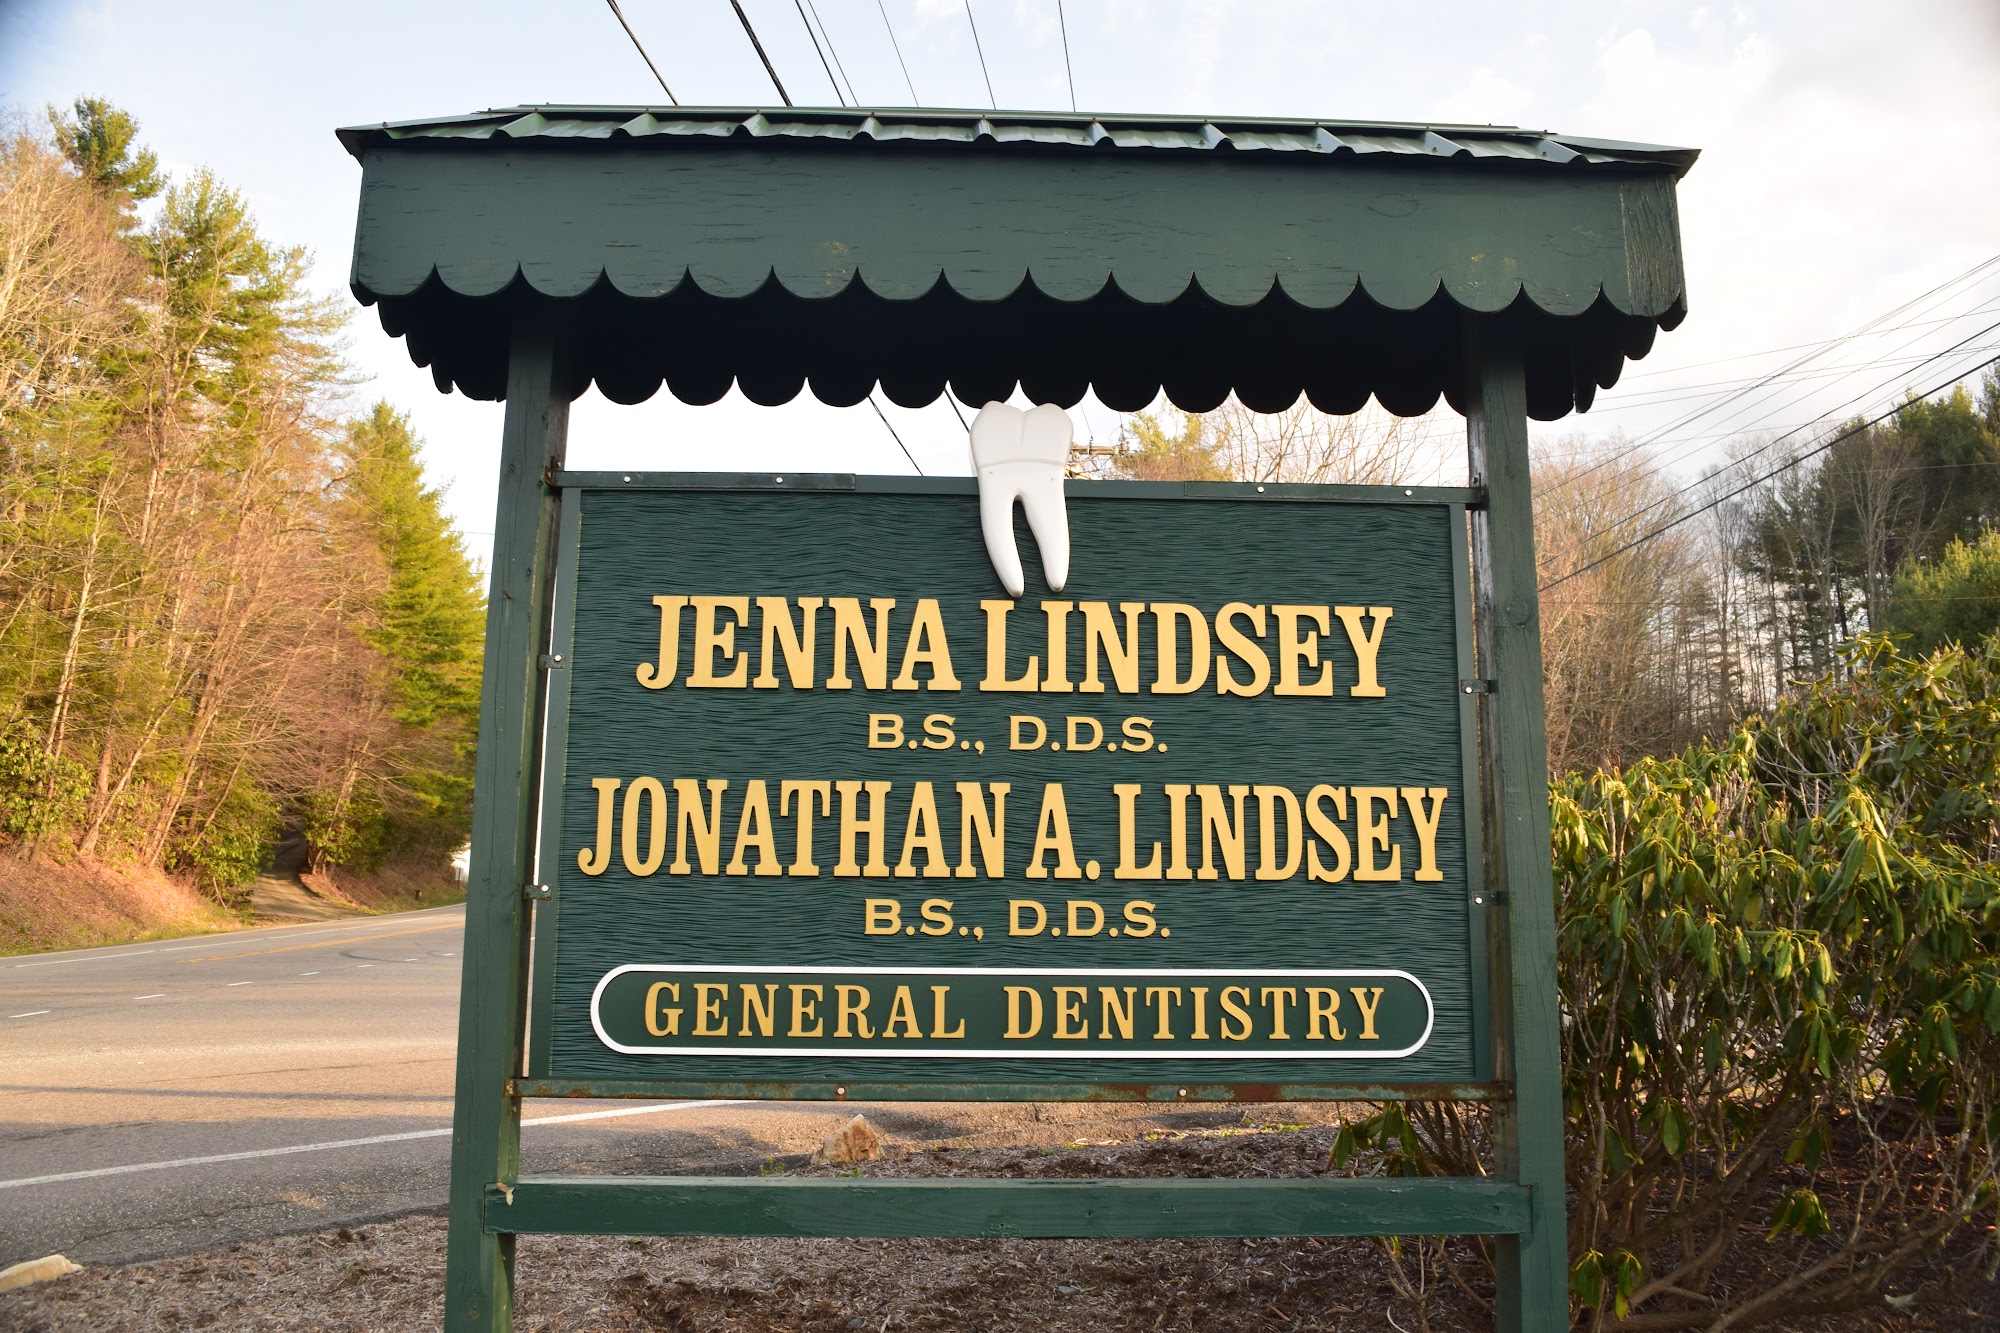 Jonathan A. Lindsey General Dentistry 1632 Millers Gap Hwy, Newland North Carolina 28657